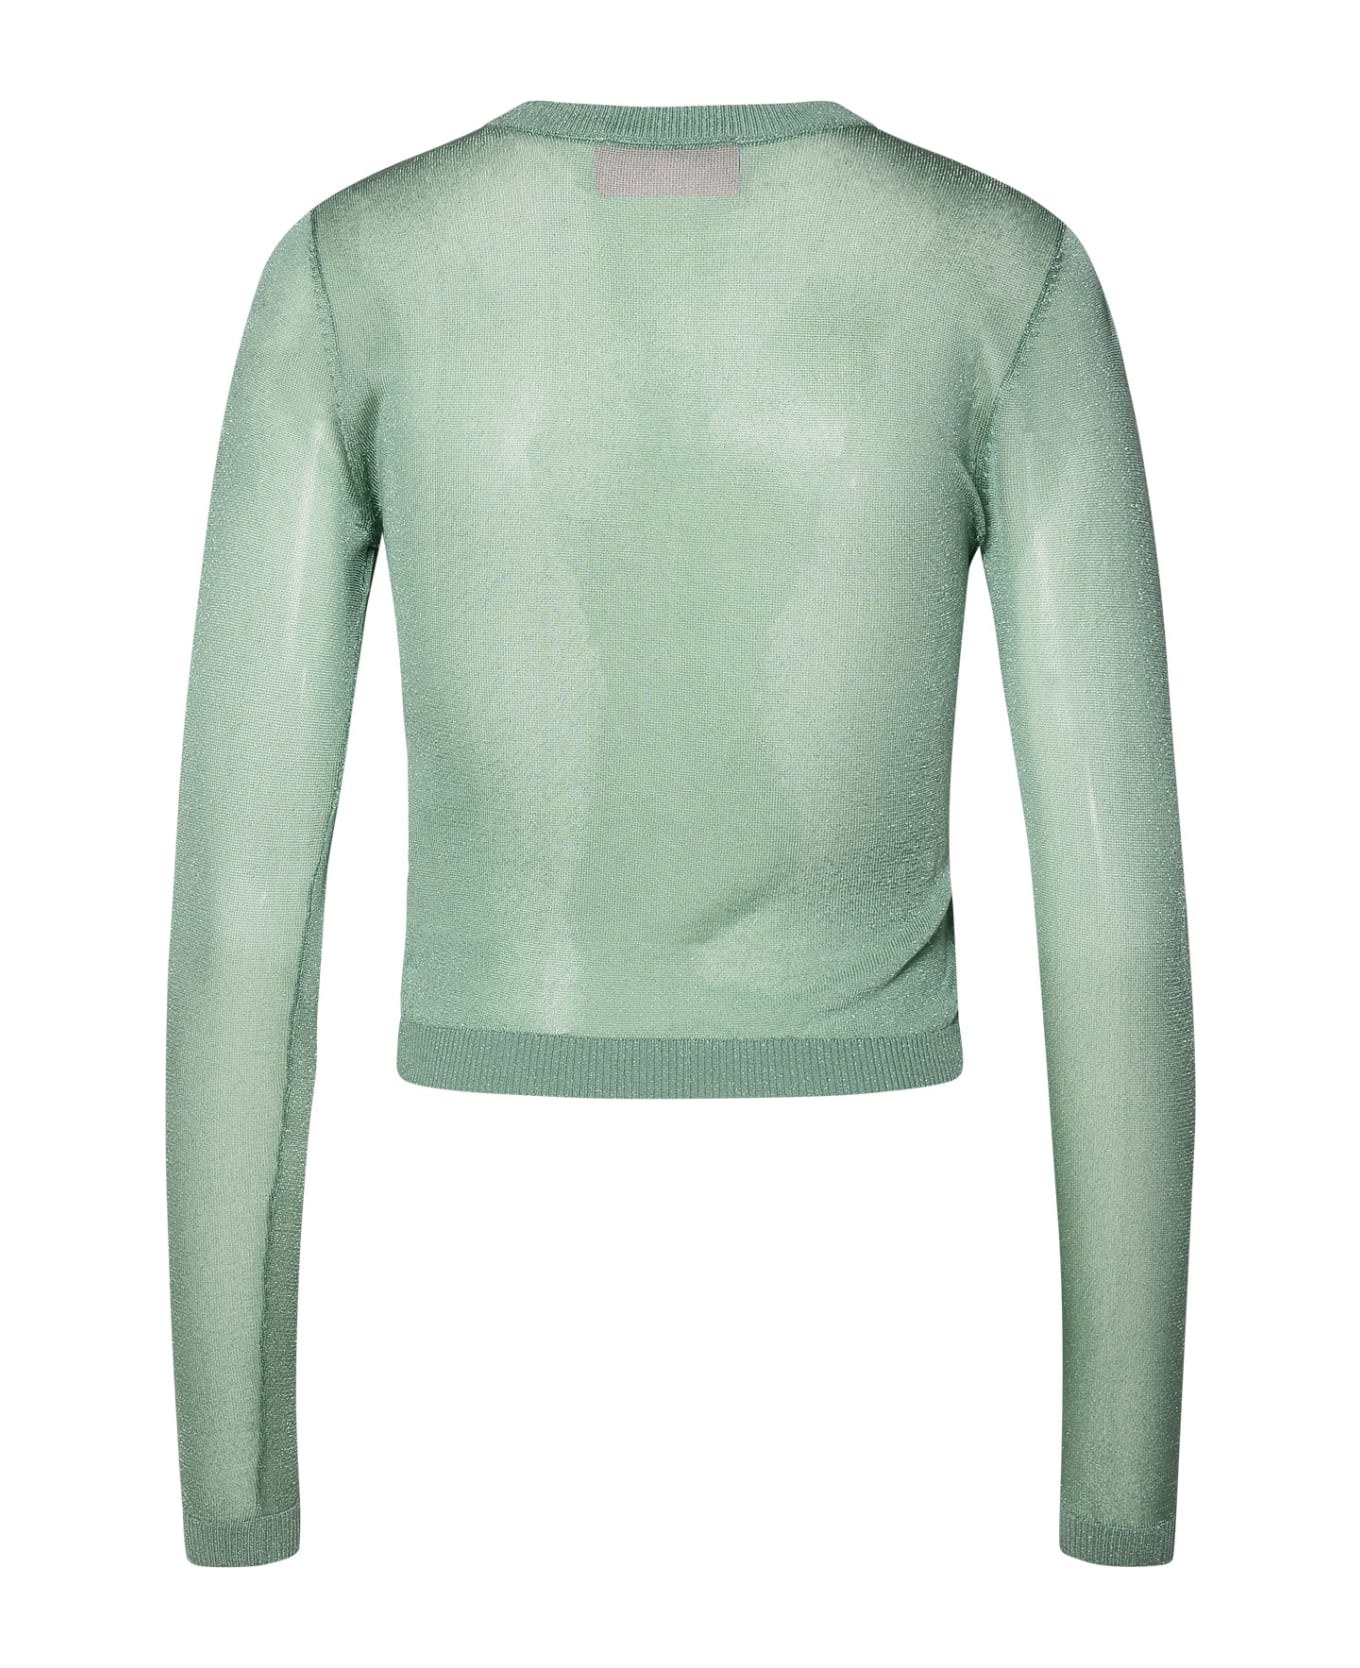 Chiara Ferragni Green Viscose Blend Sweater - Green